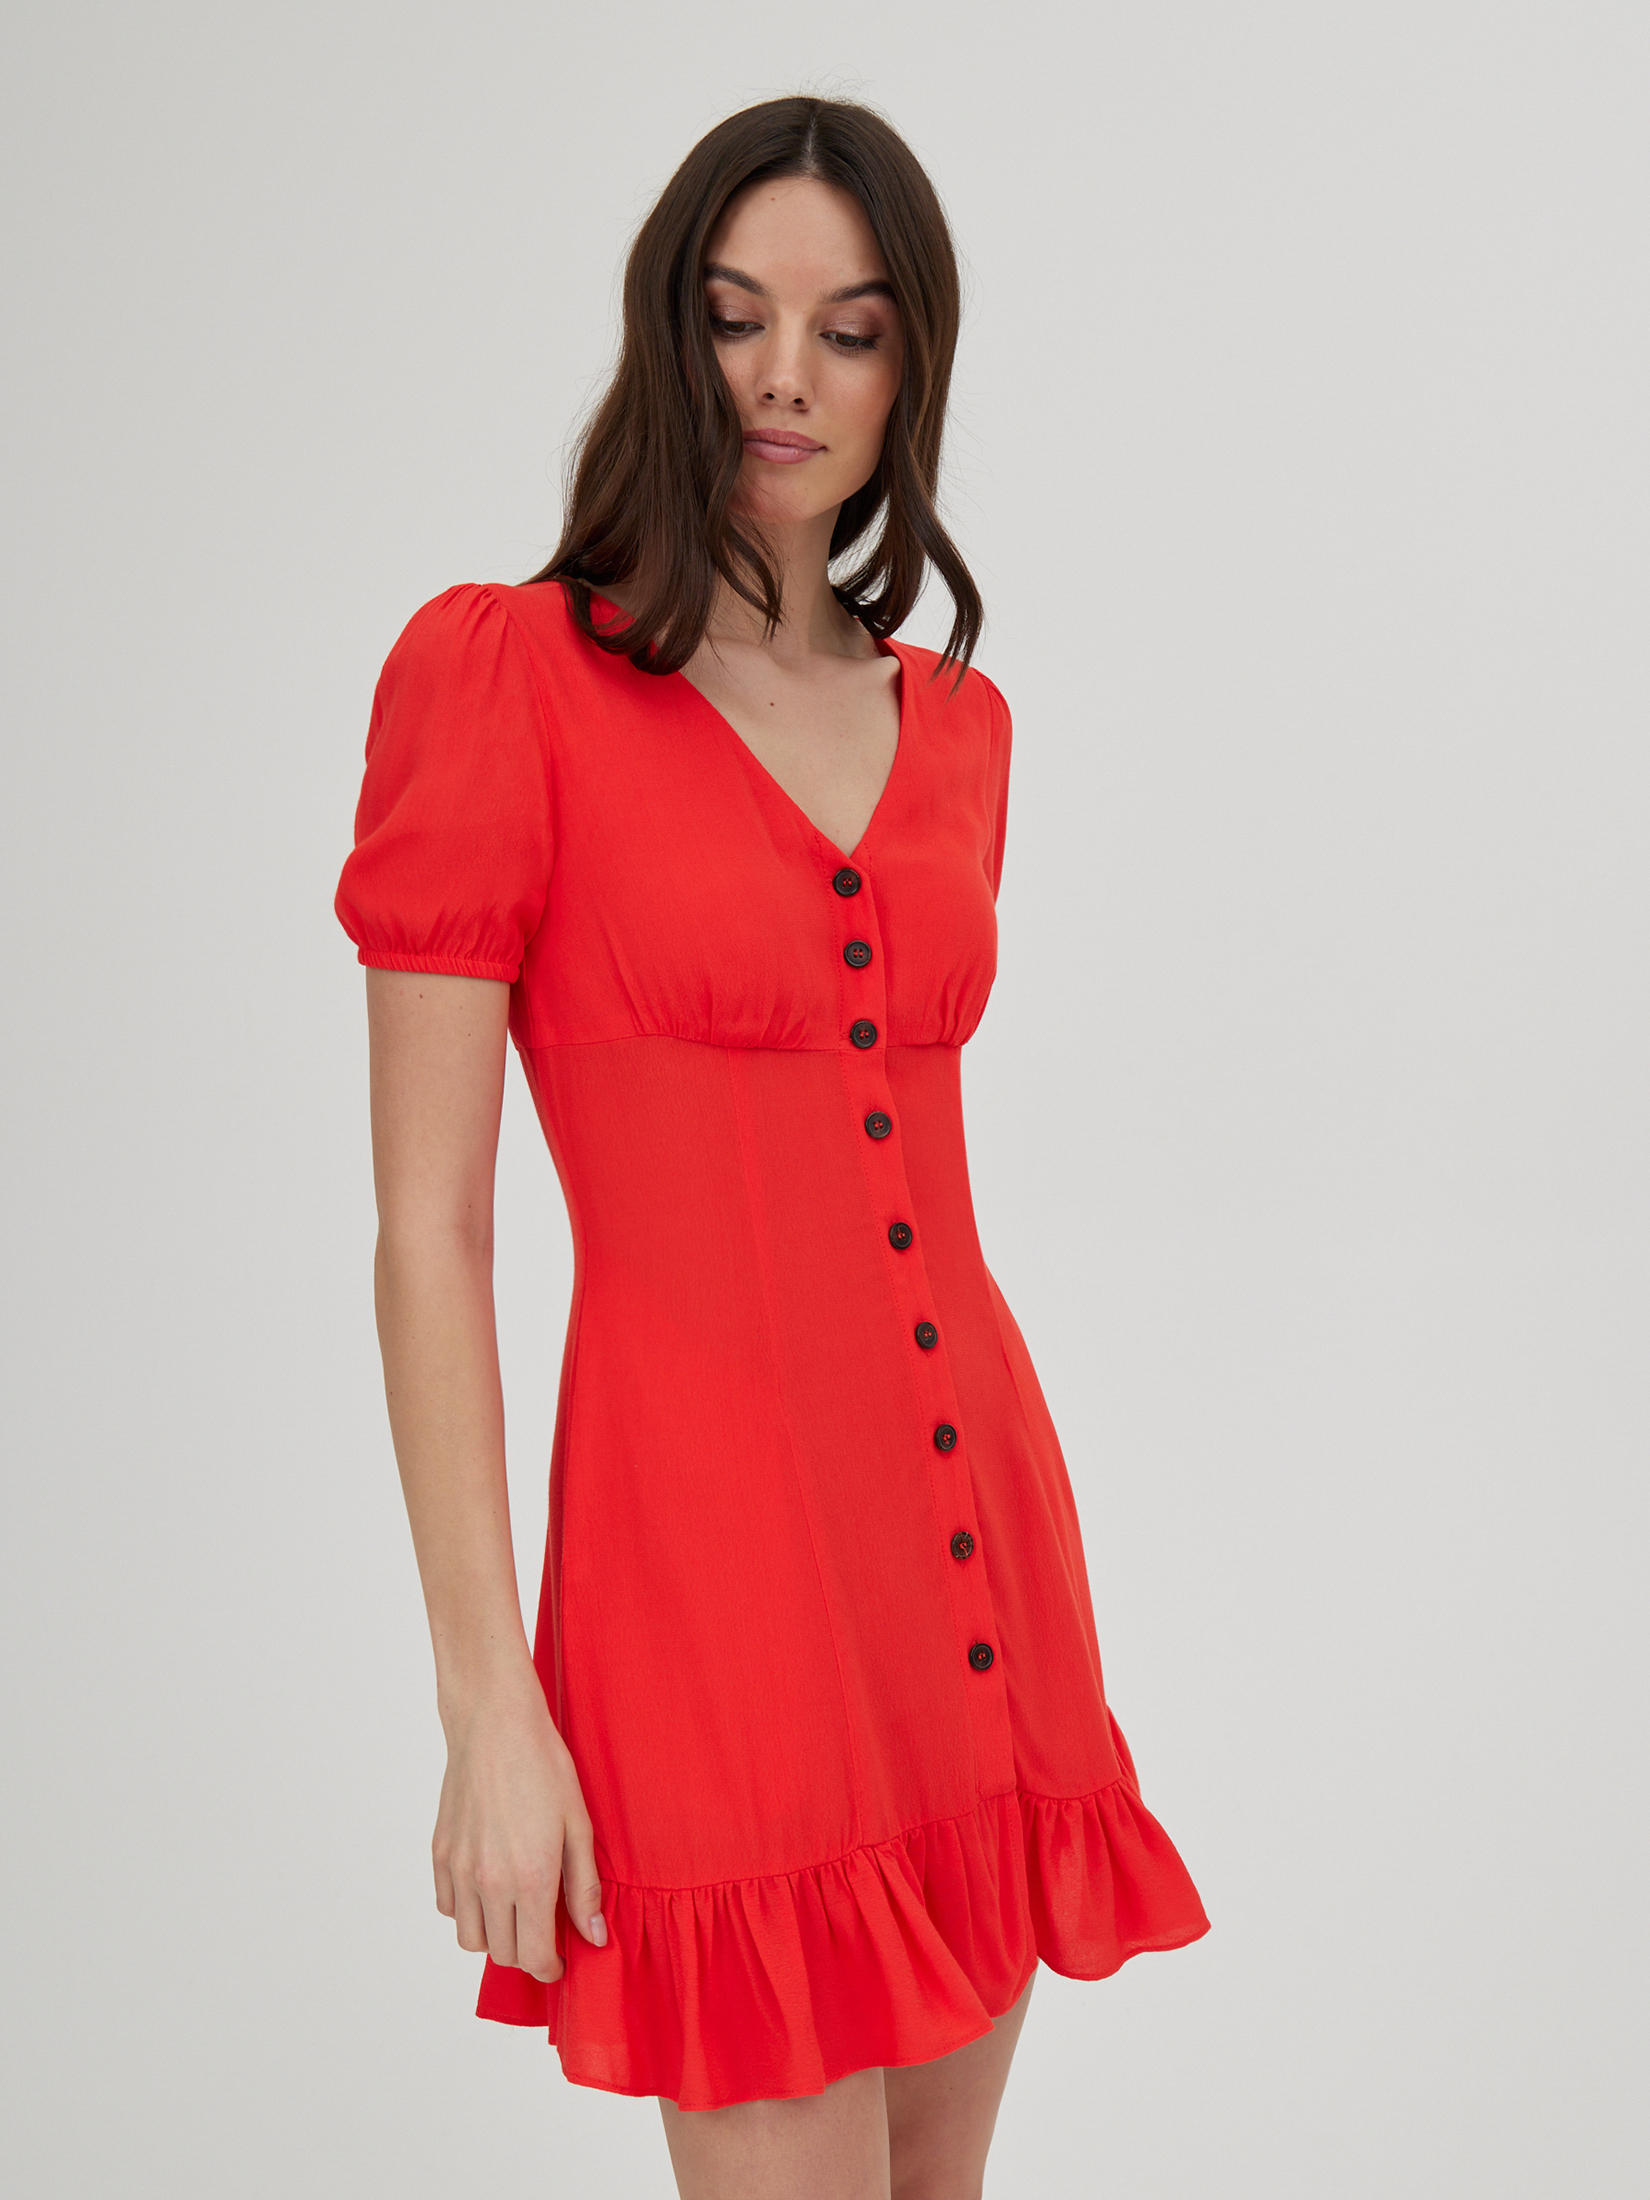 Платье женское красное платье oodji нарядное 44 46 размер